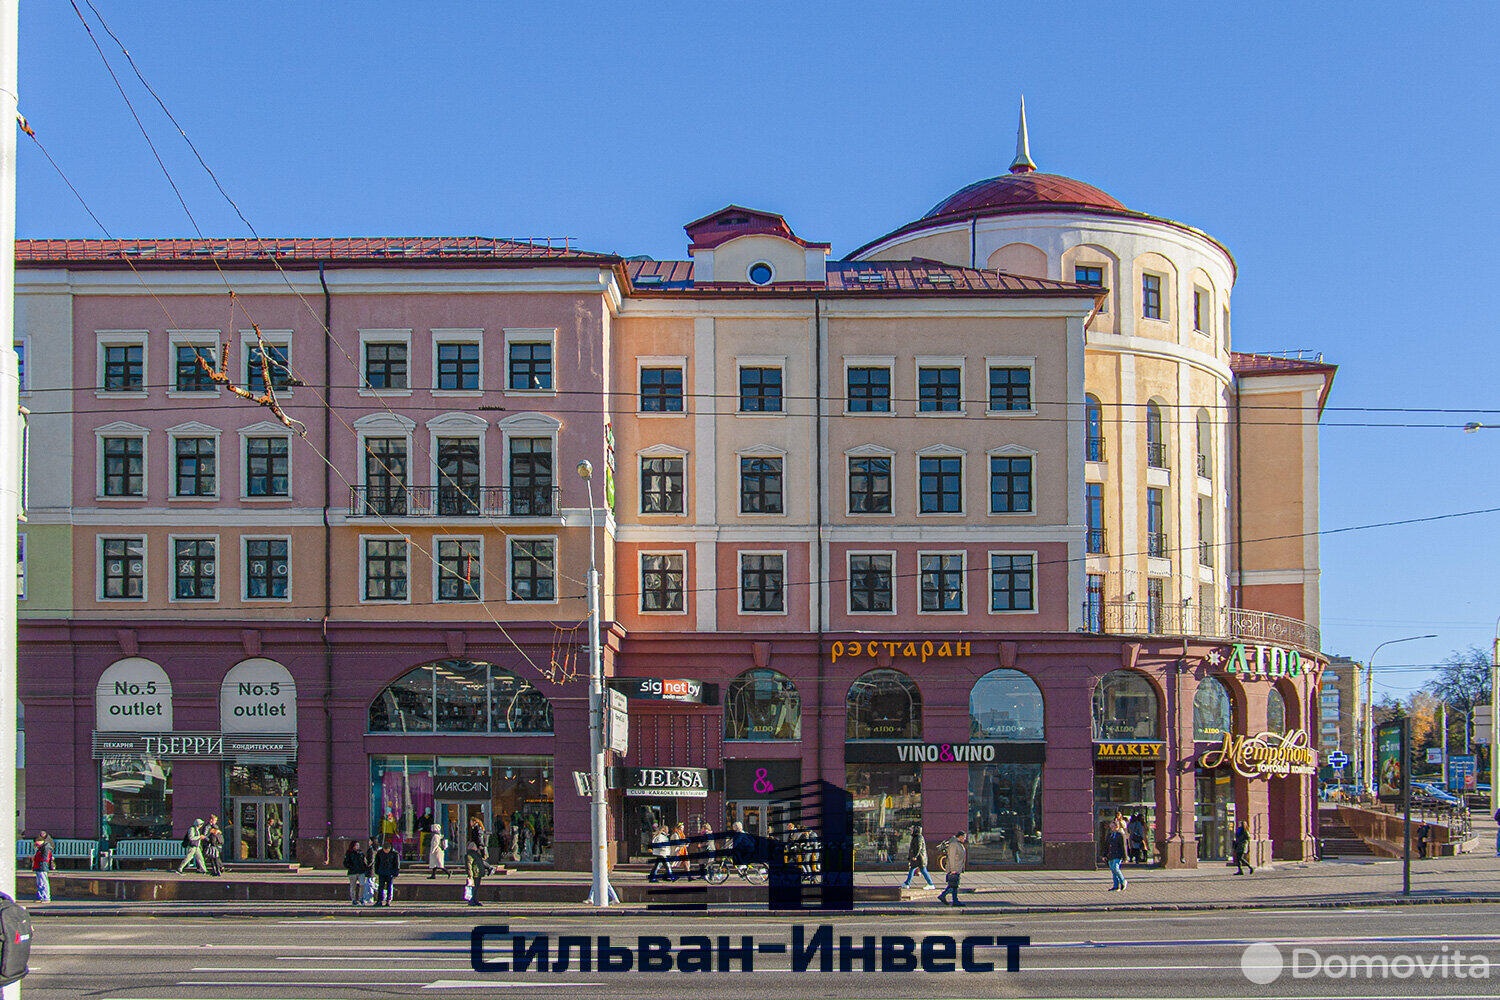 Аренда офиса на ул. Немига, д. 5 в Минске, 11010EUR - фото 3